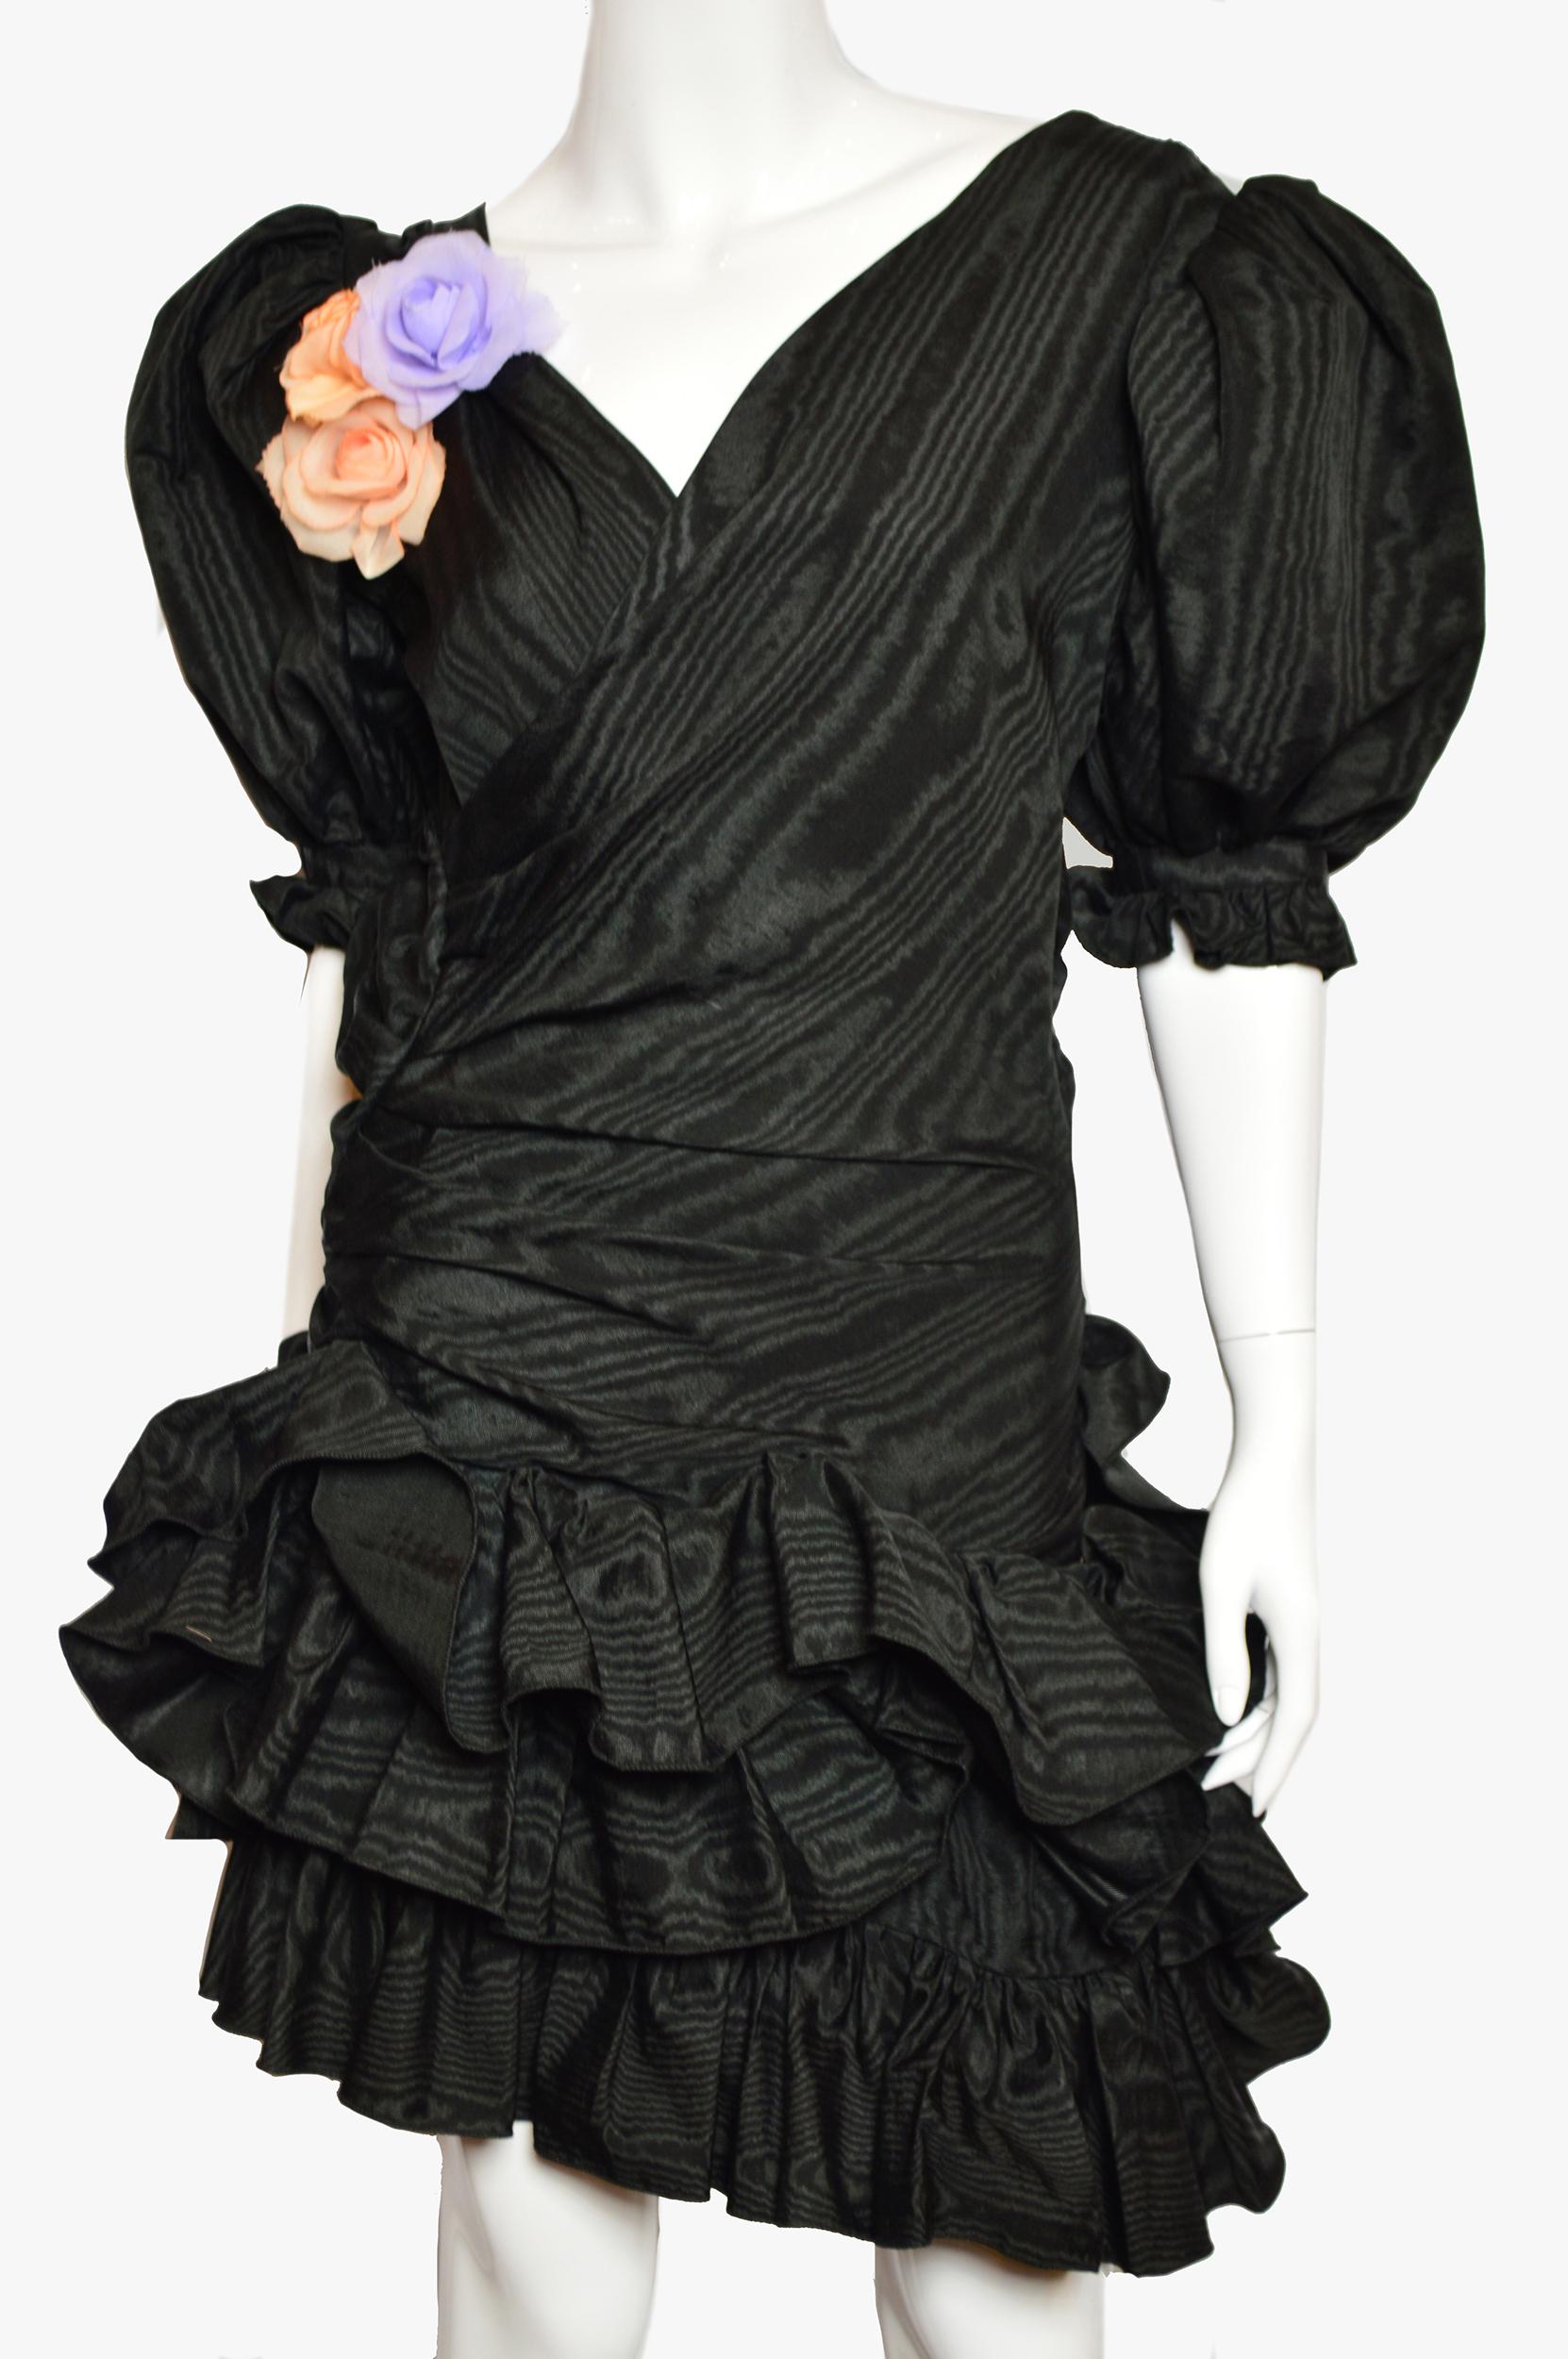 Seltenes Vintage Ungaro Parallele schwarzes Cocktailkleid mit Puffärmeln und Blumendekor.
MATERIALIEN: Nicht angegeben; Seide
Größe XS - S. Nicht angegeben, bitte Maße überprüfen:
Taille: 59 cm / 23.2